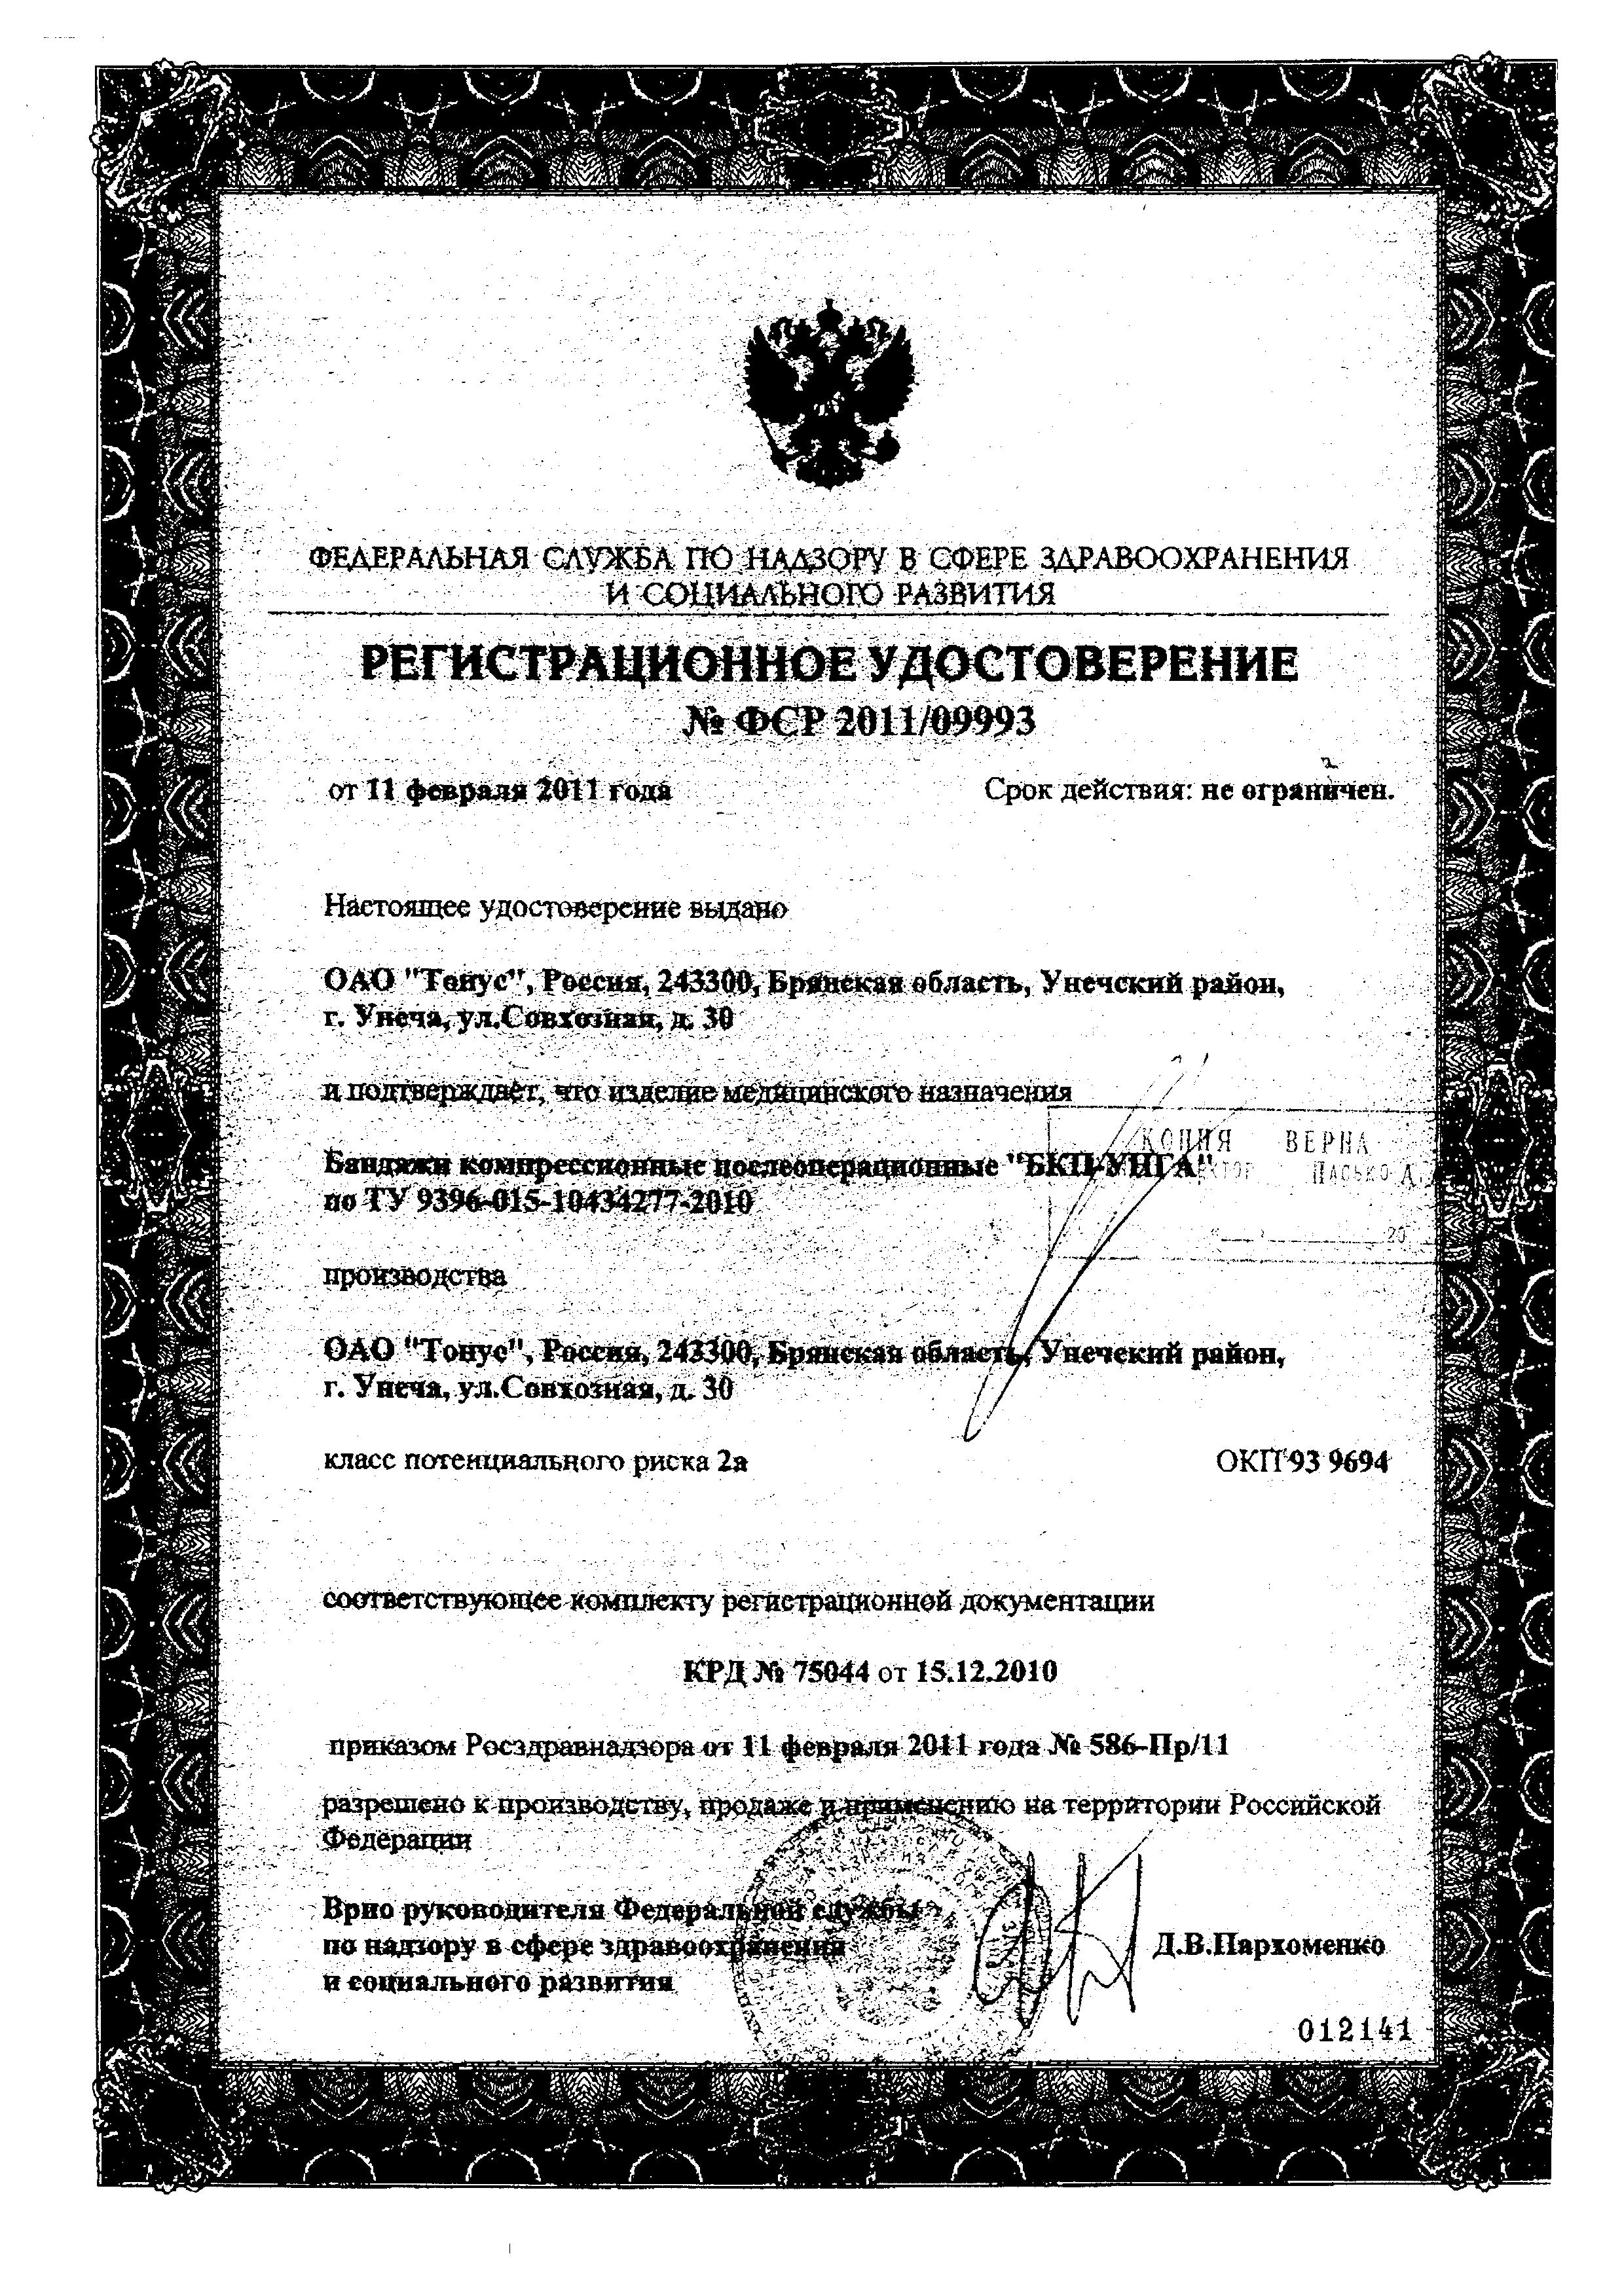 Бандаж послеоперационный БКП-Унга С-322 сертификат